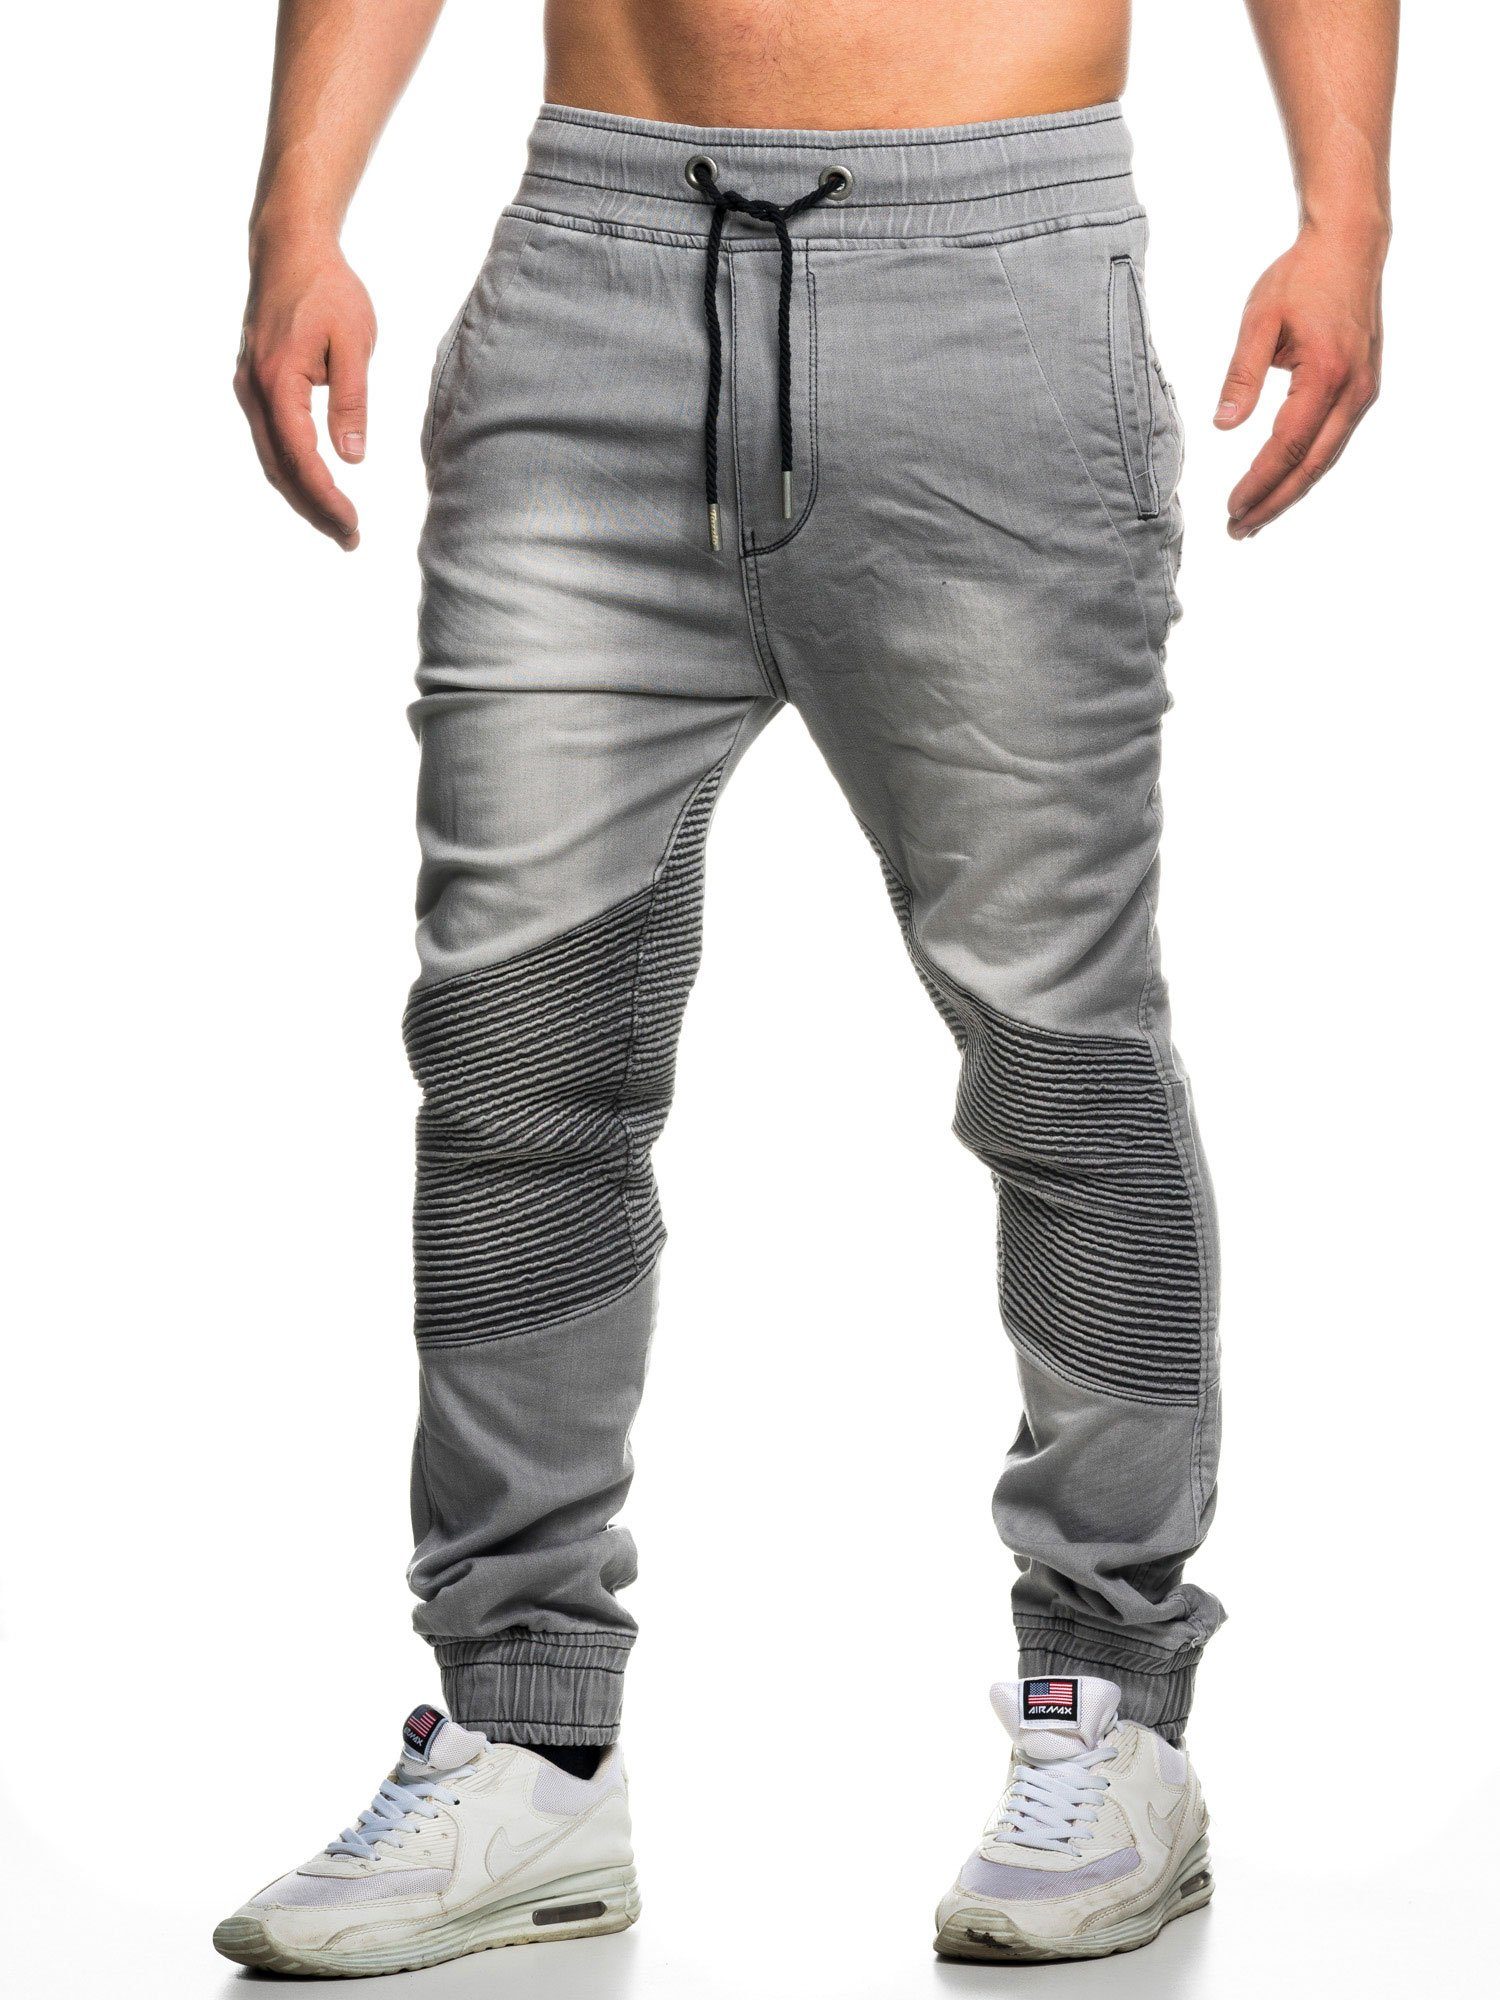 grau 16505 Jogger-Stil & Biker-Look Straight-Jeans Hose Tazzio im Sweat